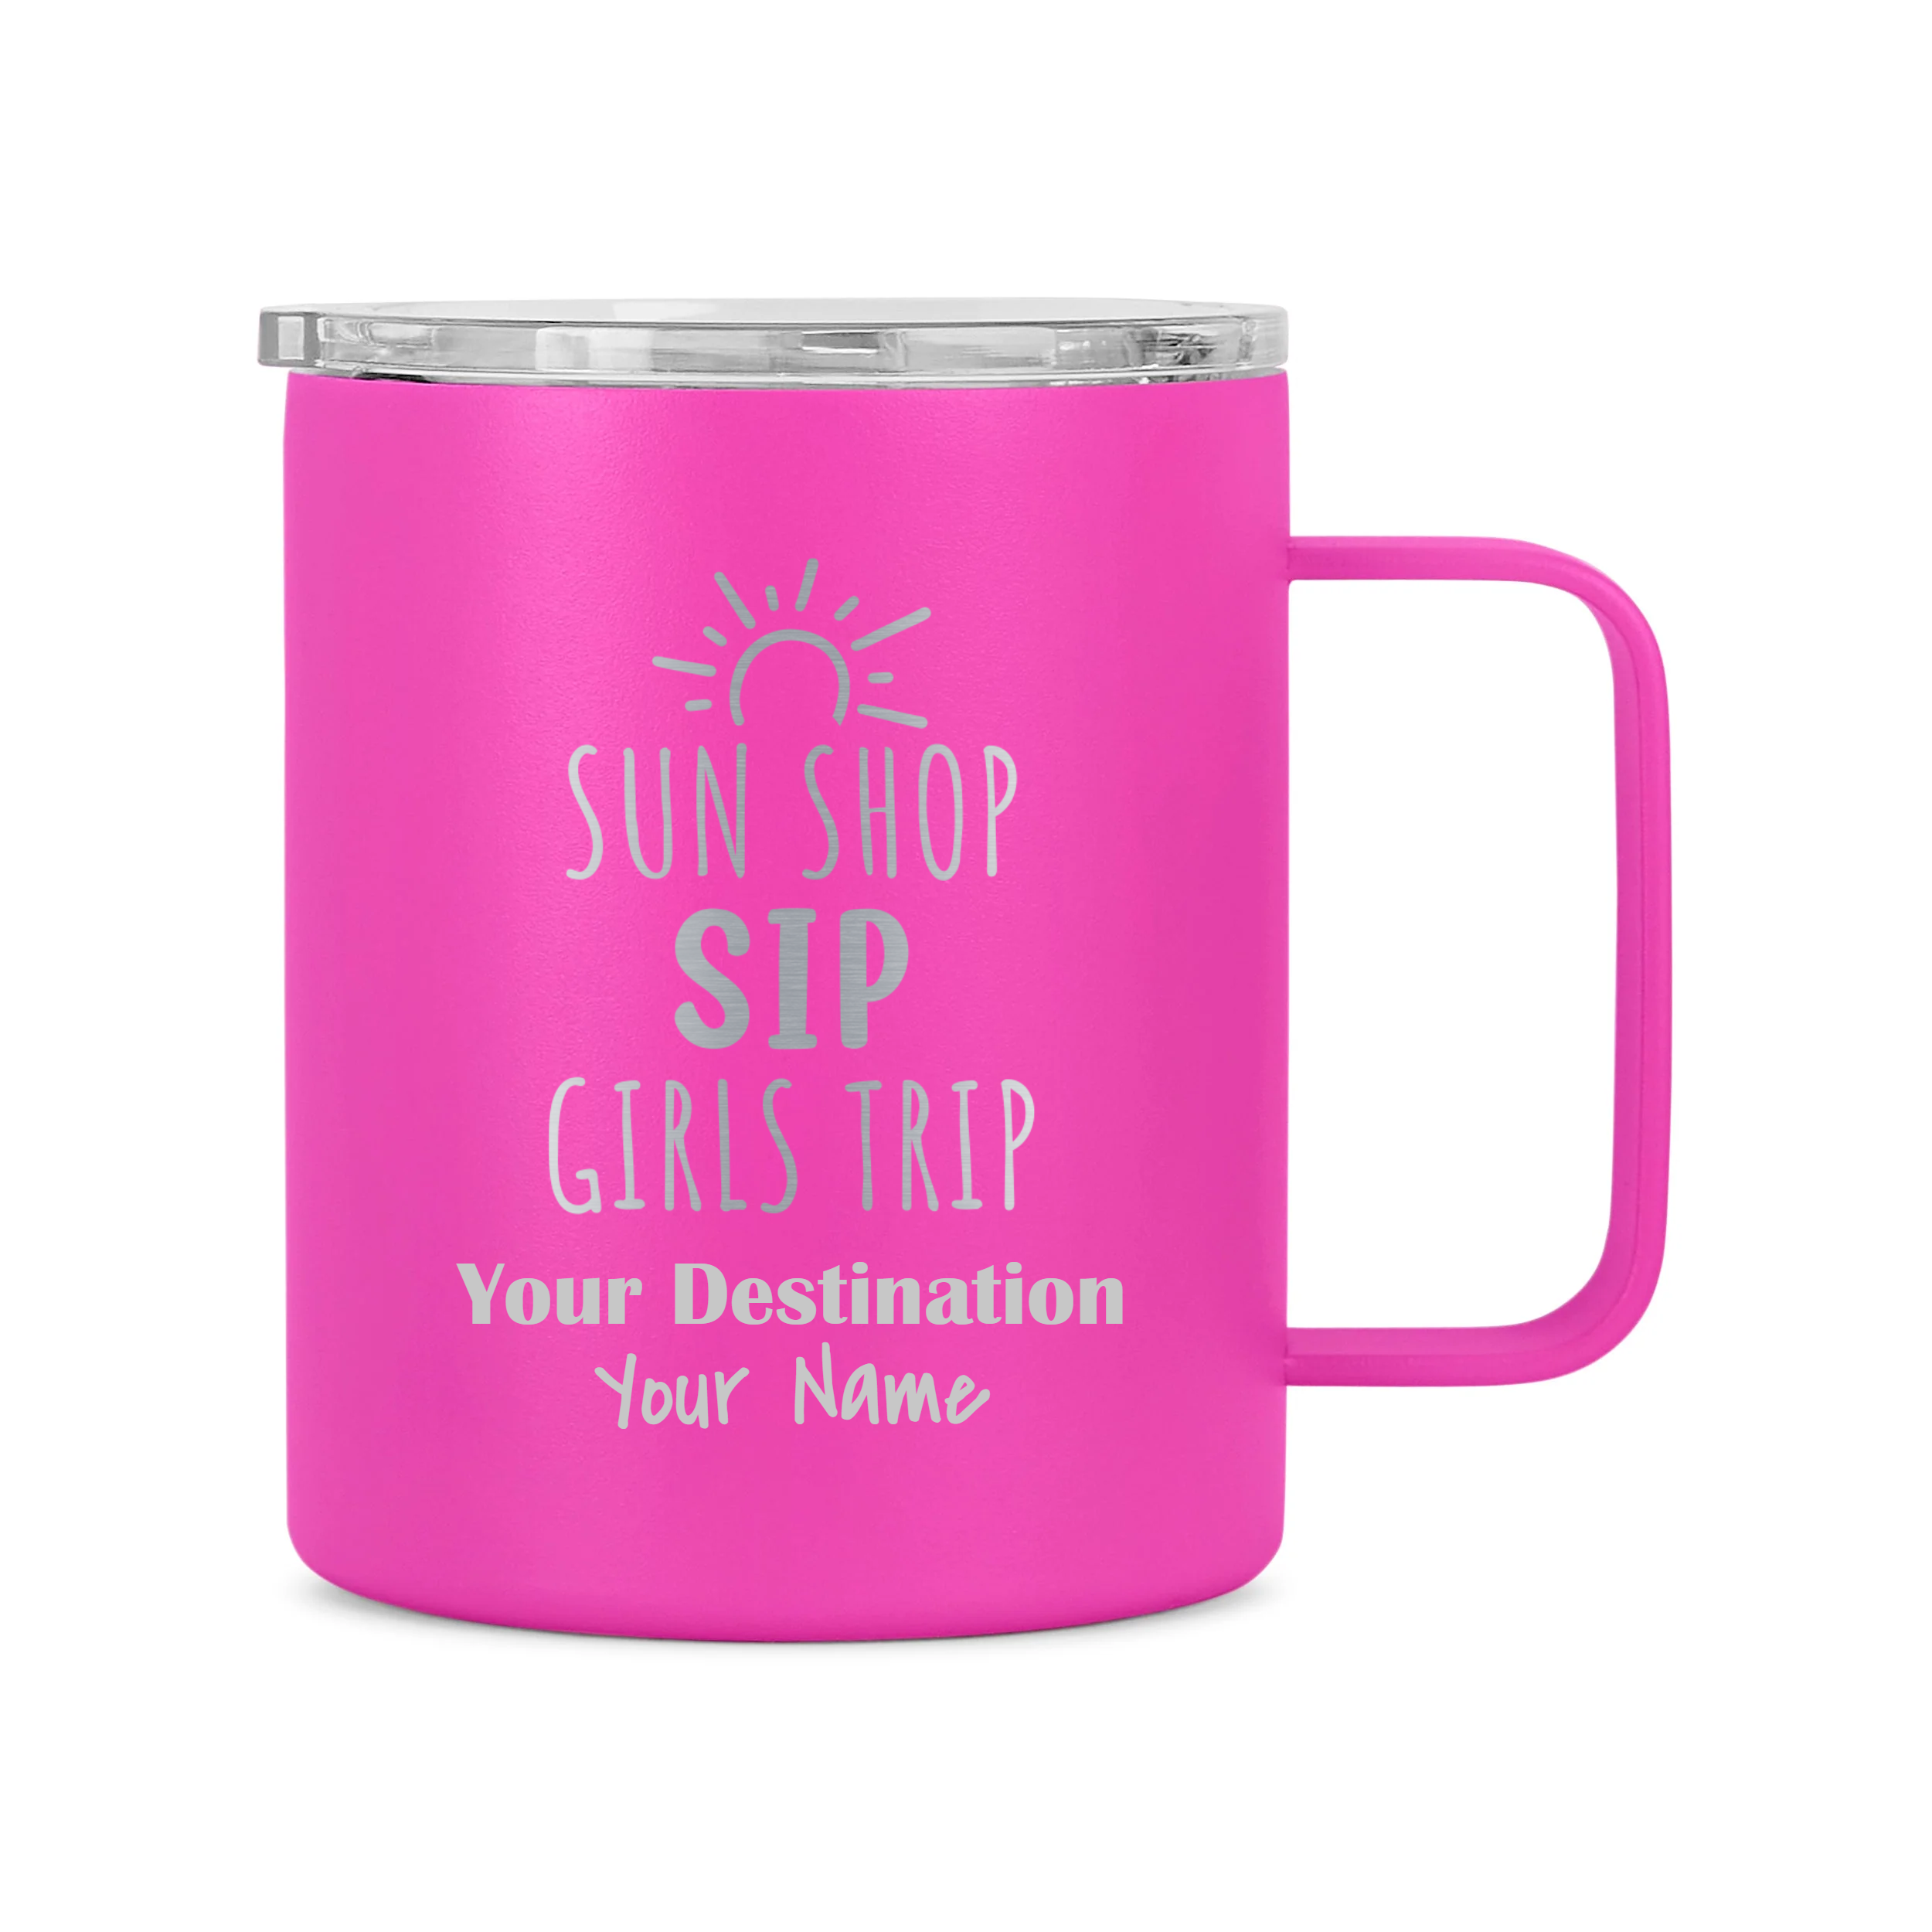 12oz Girls Trip Theme Coffee Mug